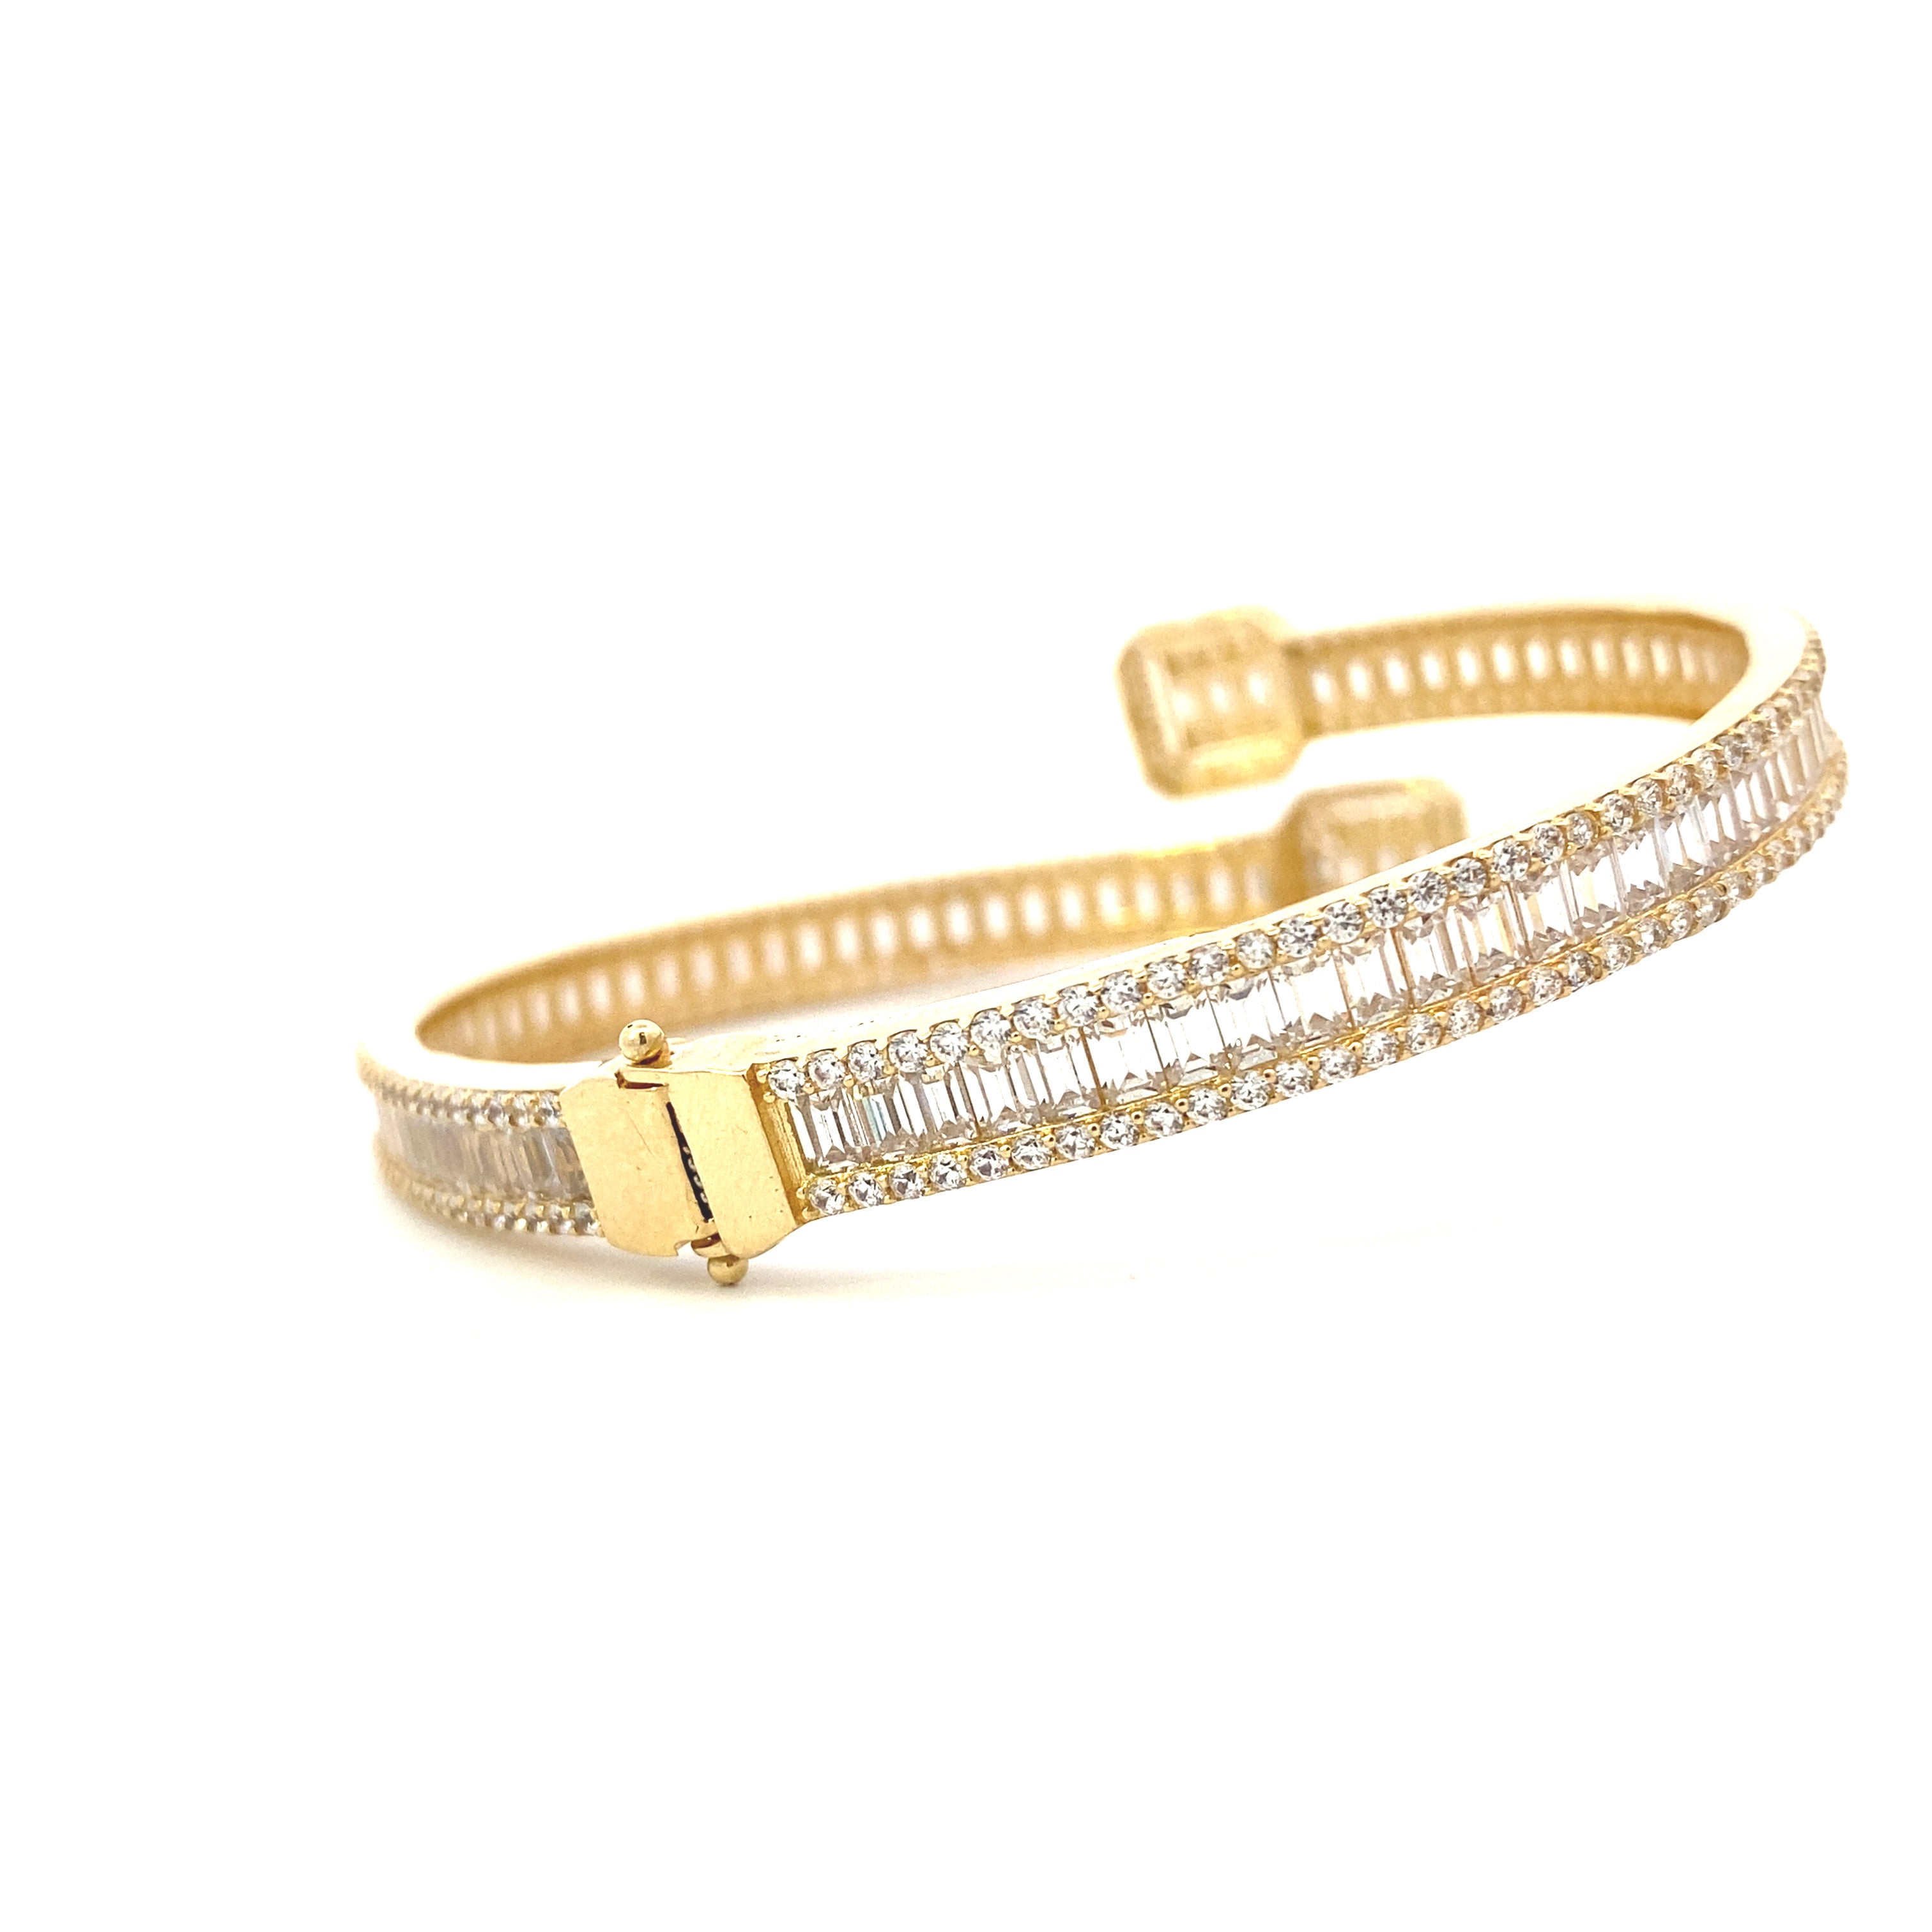 Bling Bangle Bracelet 10K Gold